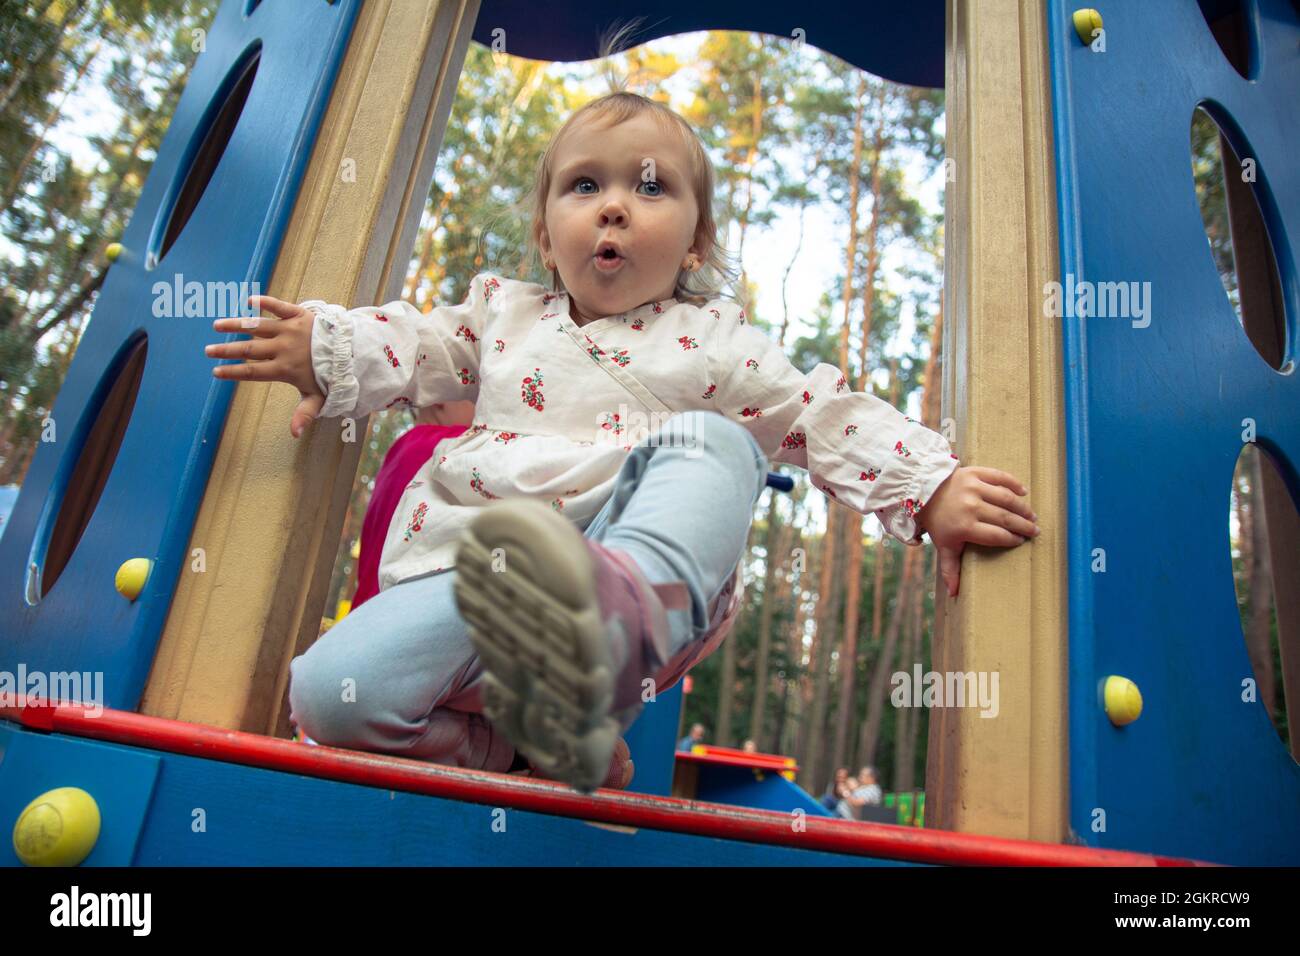 Nette liebenswert kaukasischen kleinen Mädchen spielt auf dem Spielplatz im Freien. Ein Mädchen in einem weißen Kleid und ihre Haare in einem Pferdeschwanz. Stockfoto